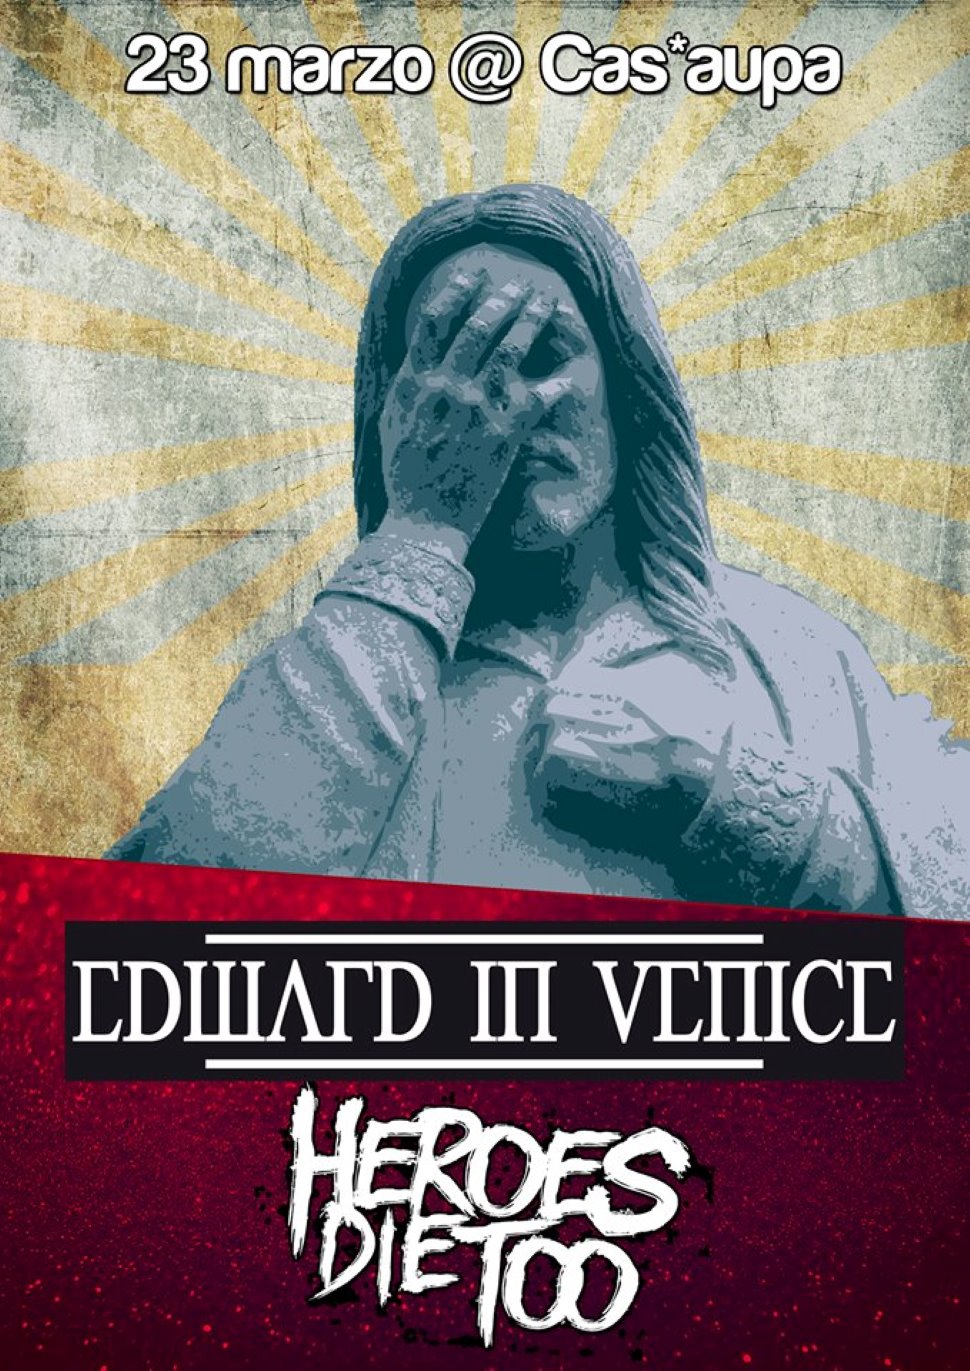 Edward In Venice + Heroes Die Too live @Cas'Aupa